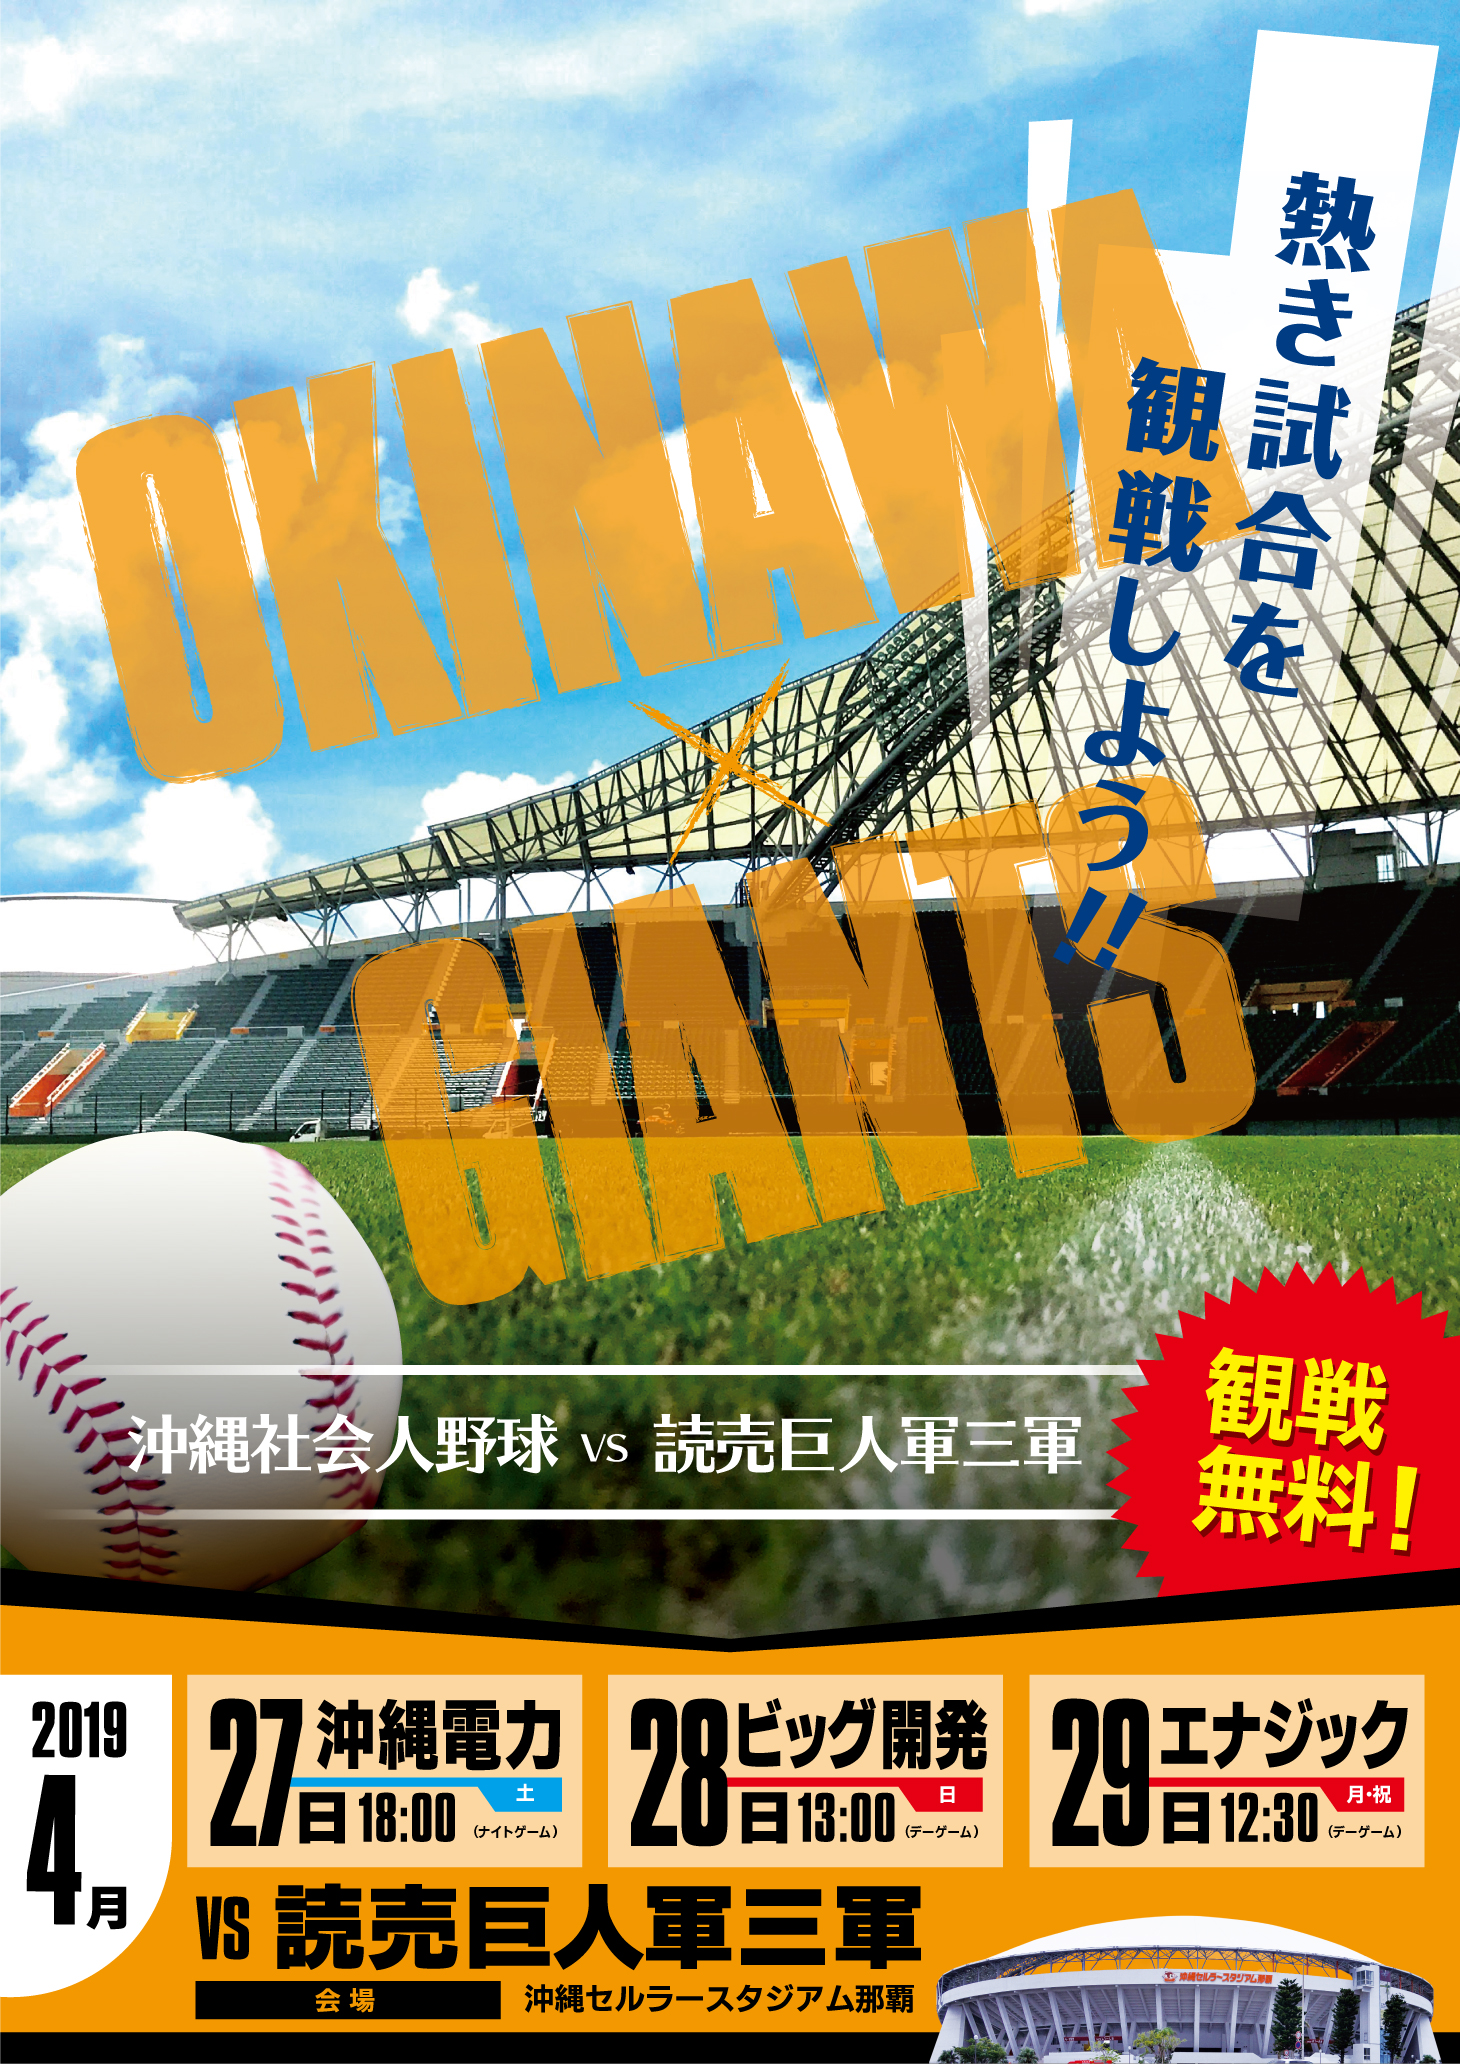 沖縄社会人野球VS読売巨人軍三軍　交流試合が開催されます。